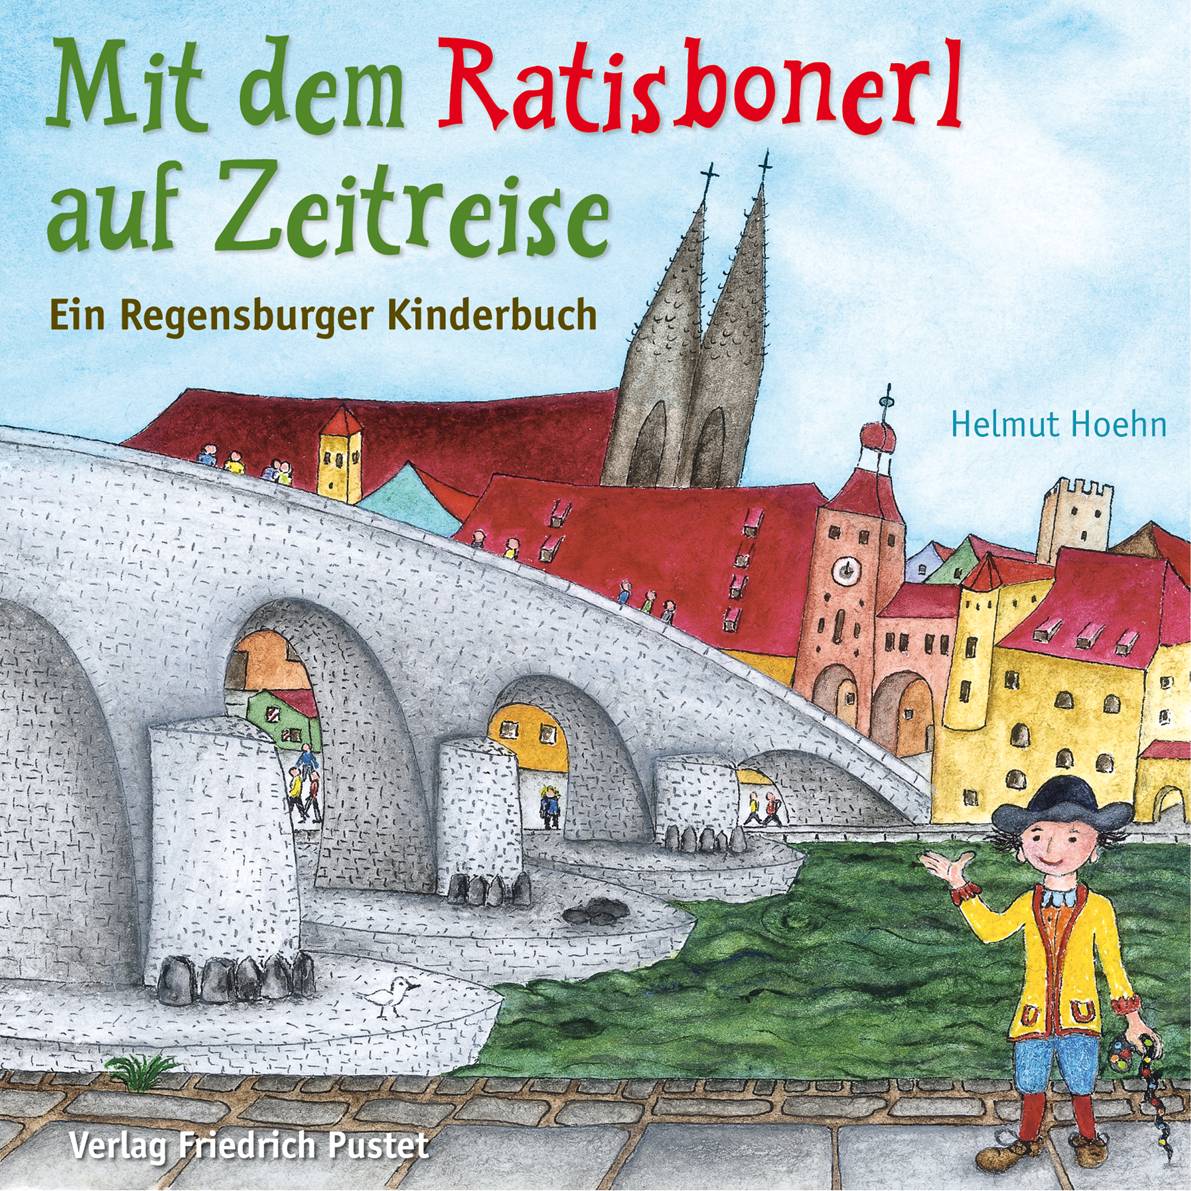 Helmut Hoehn: Das Ratisbonerl auf Zeitreise, Buchcover